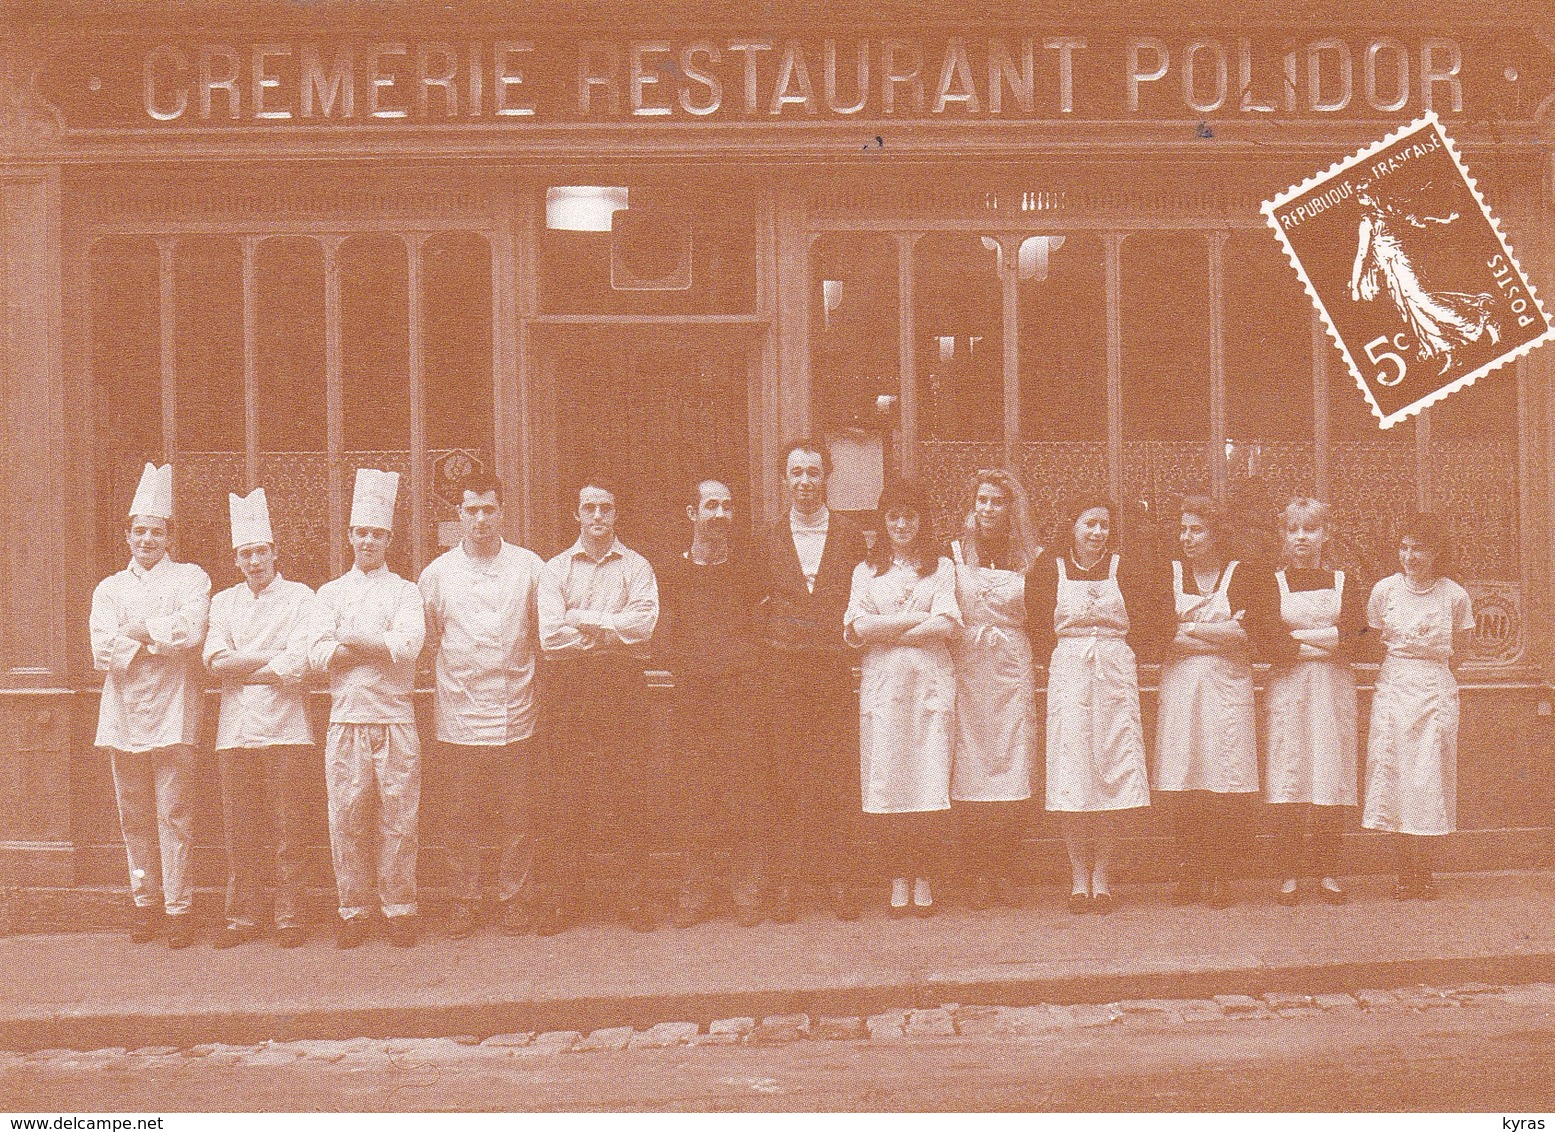 CPM 10x15 .REPRODUCTION  .Crèmerie-Restaurant POLIDOR (41, Rue Monsieur Le Prince PARIS 6°) - Restaurants